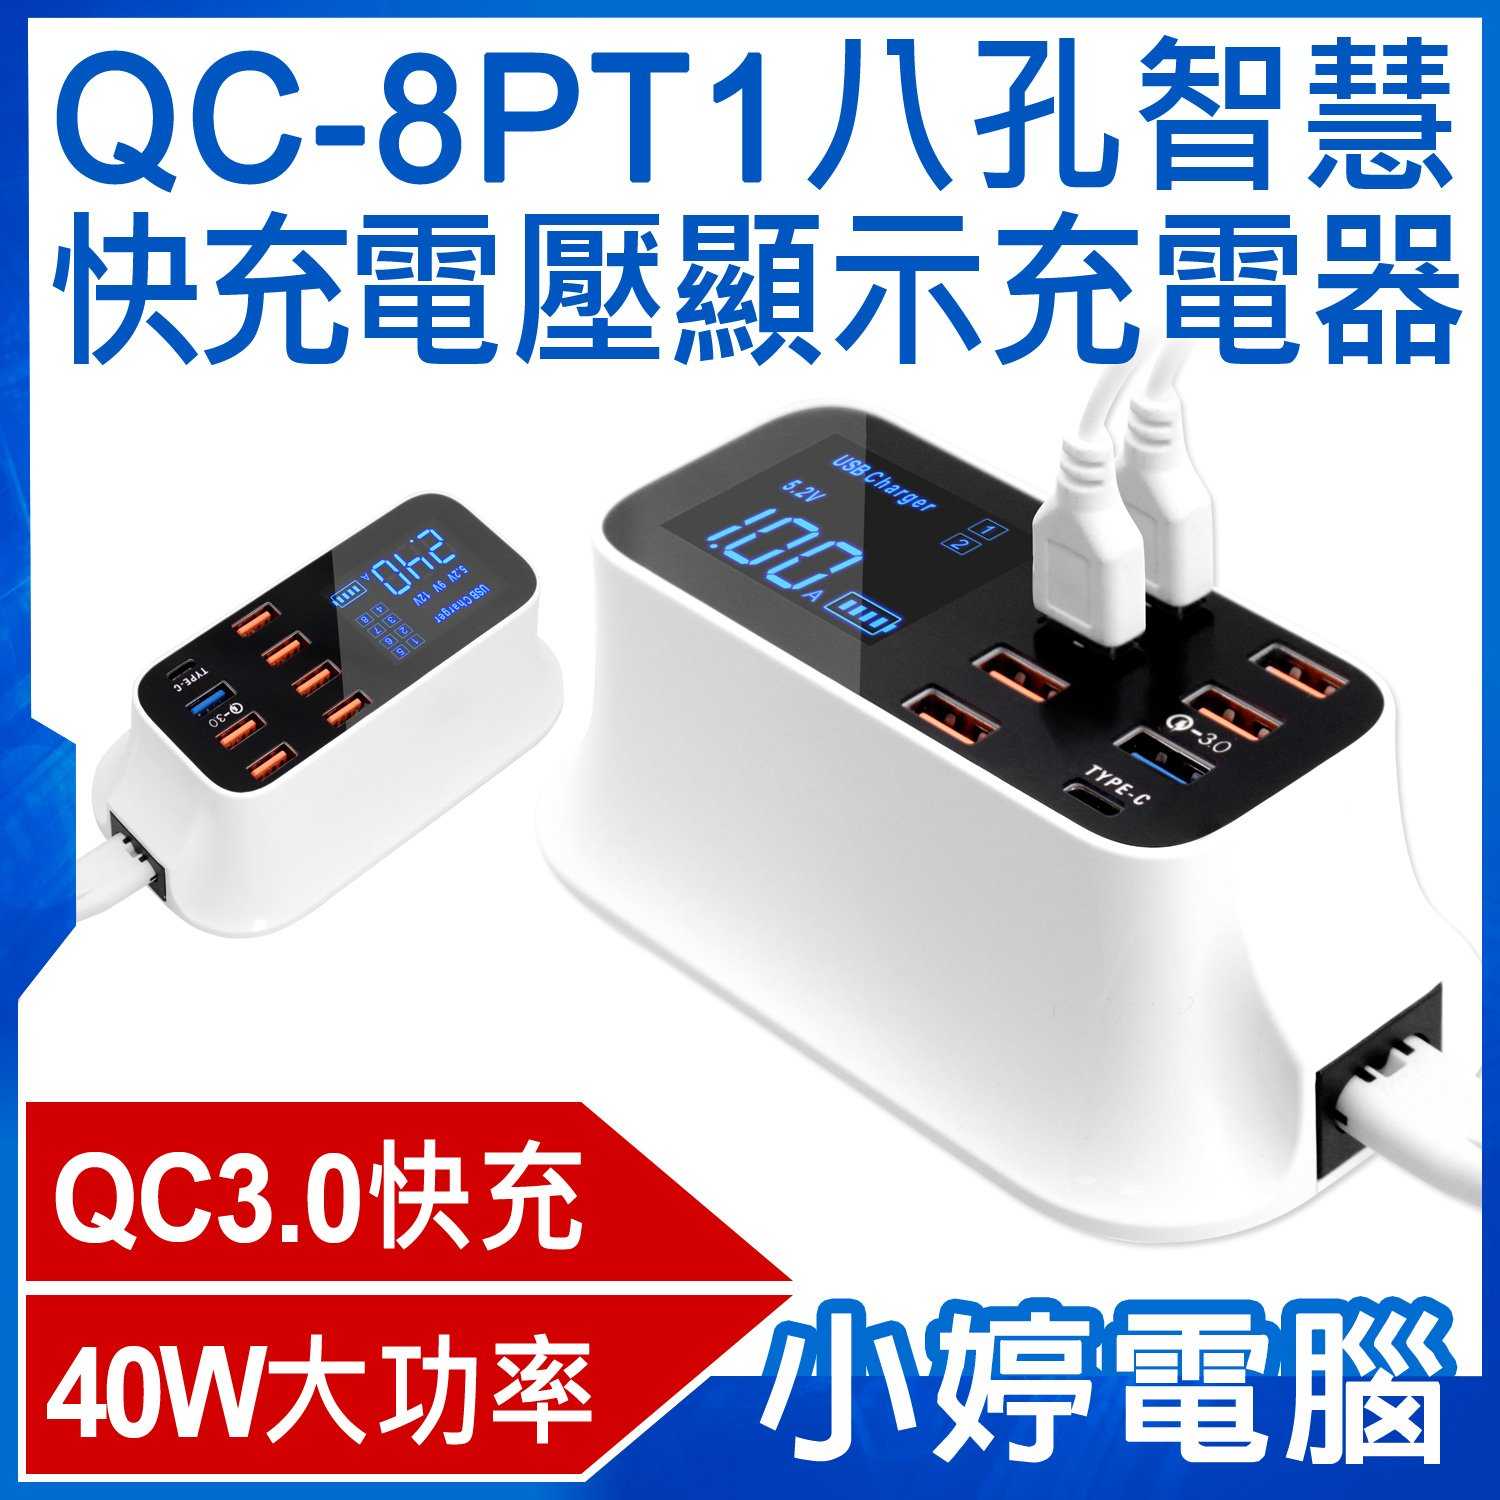 【小婷電腦】QC-8PT1八孔智慧快充電壓顯示充電器 40W大功率 QC3.0快充 AC100~240V